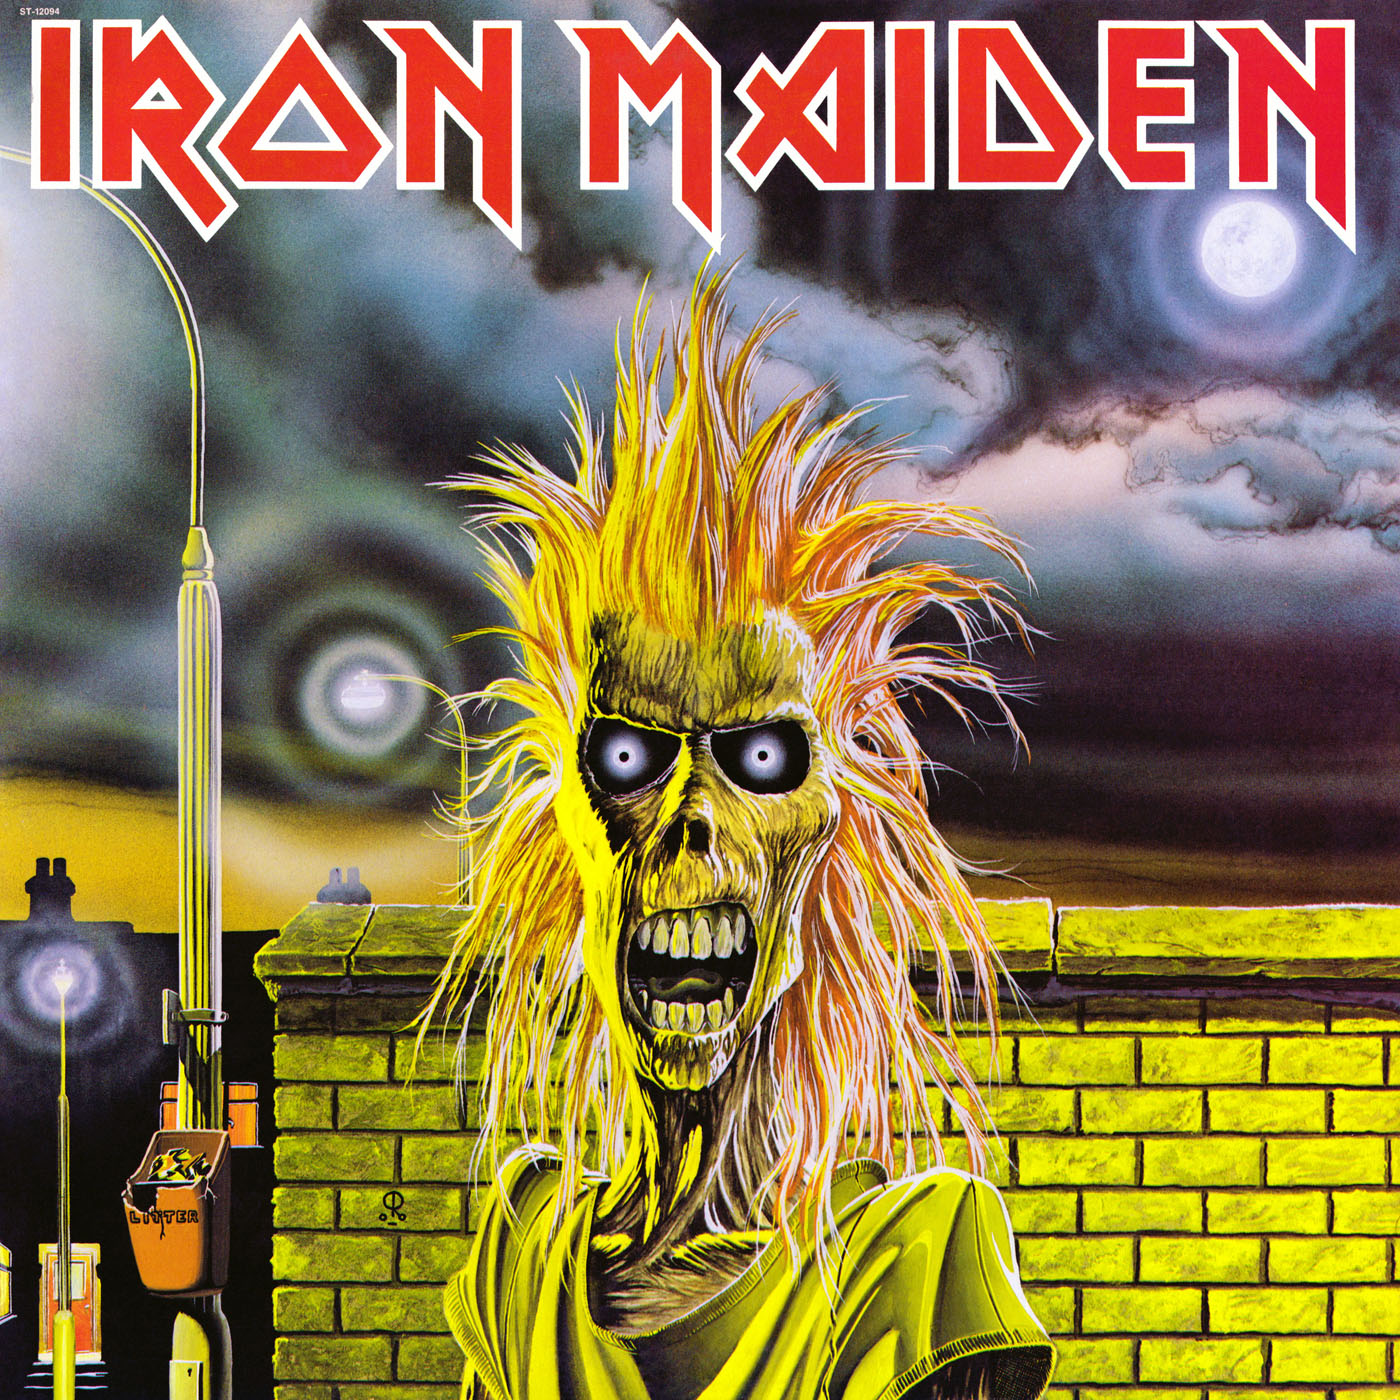 Iron Maiden - Iron Maiden CDM 7 52018 2